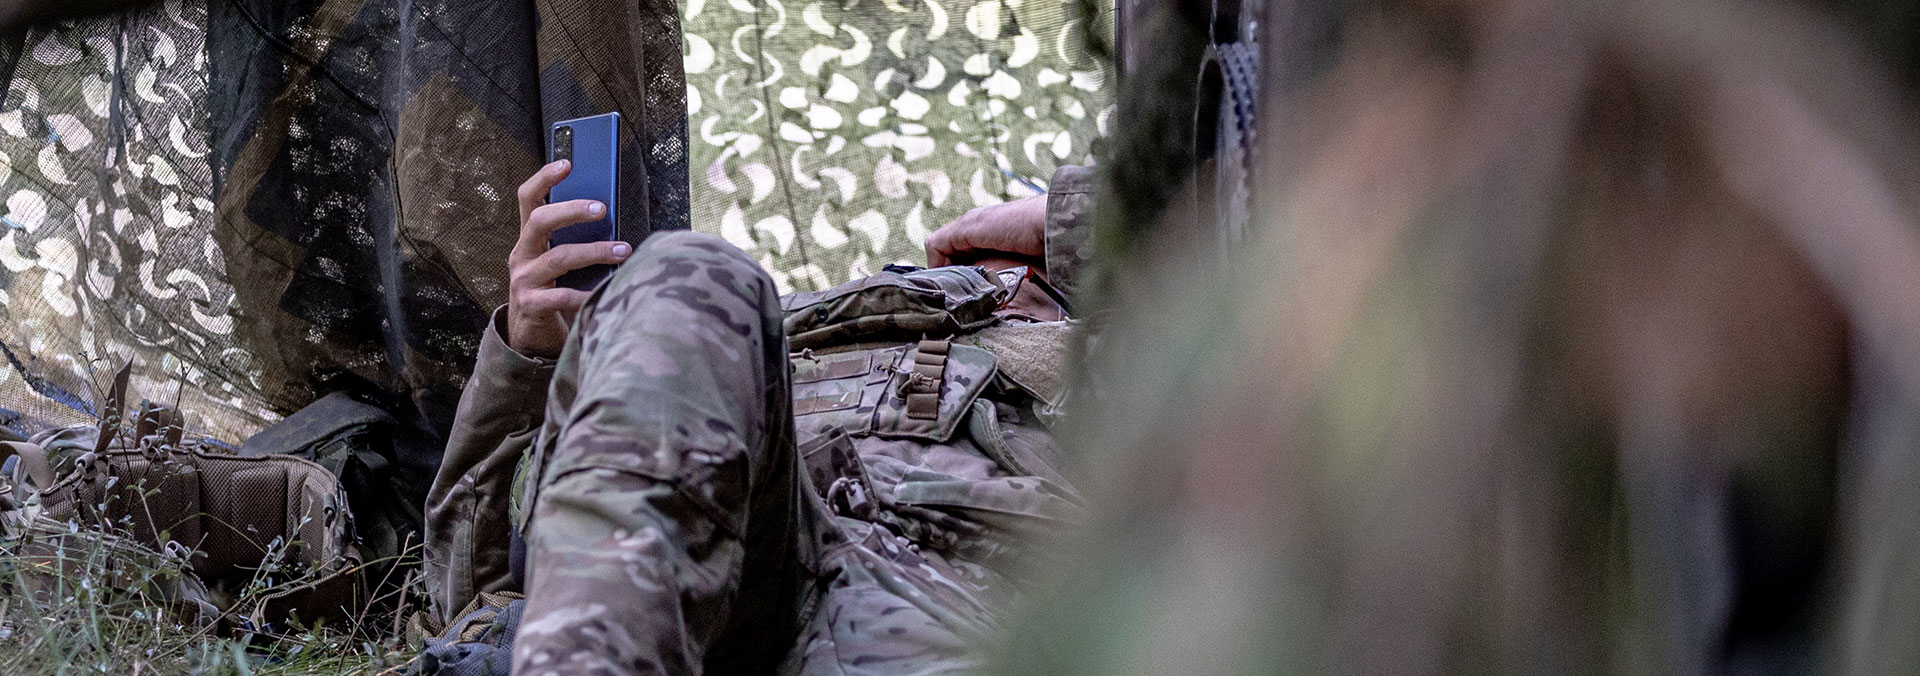 En soldat i uniform ligger ned i et aflukke skabt af sløringsnet med armen hævet højt og en mobiltelefon i hånden.